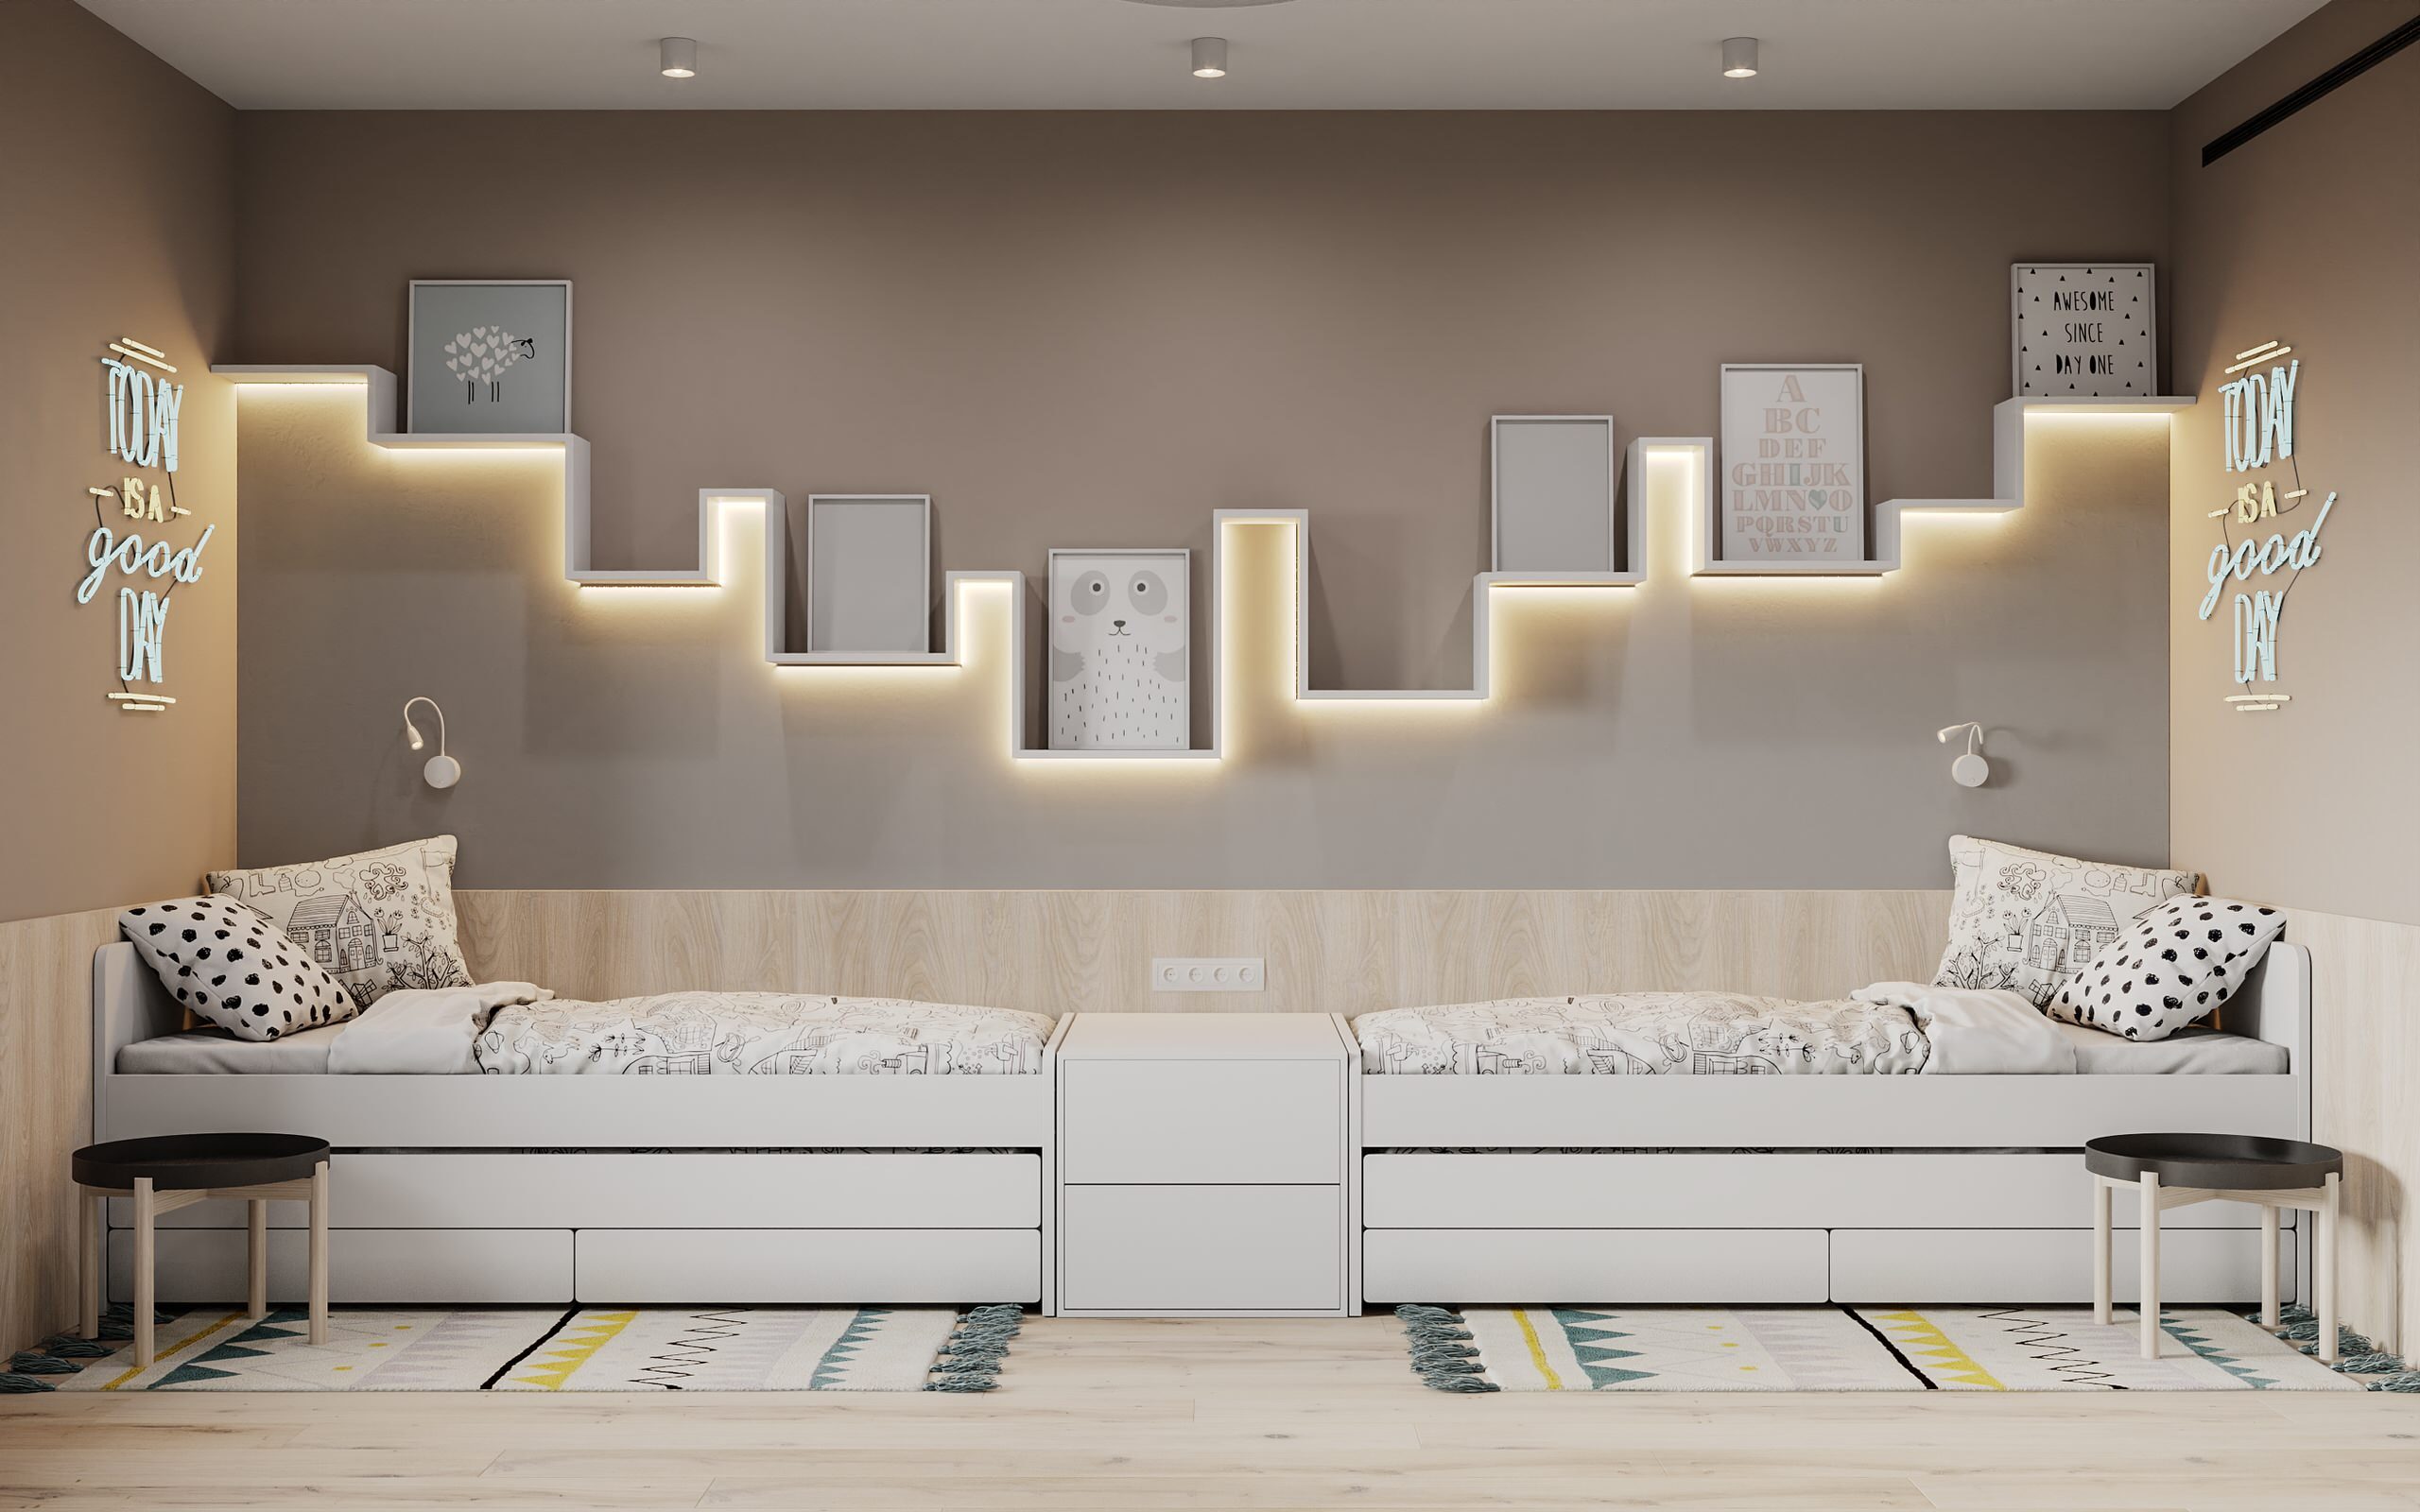 Интерьер спальни с нишей с подсветкой, подсветкой настенной, подсветкой светодиодной и светильниками над кроватью в современном стиле